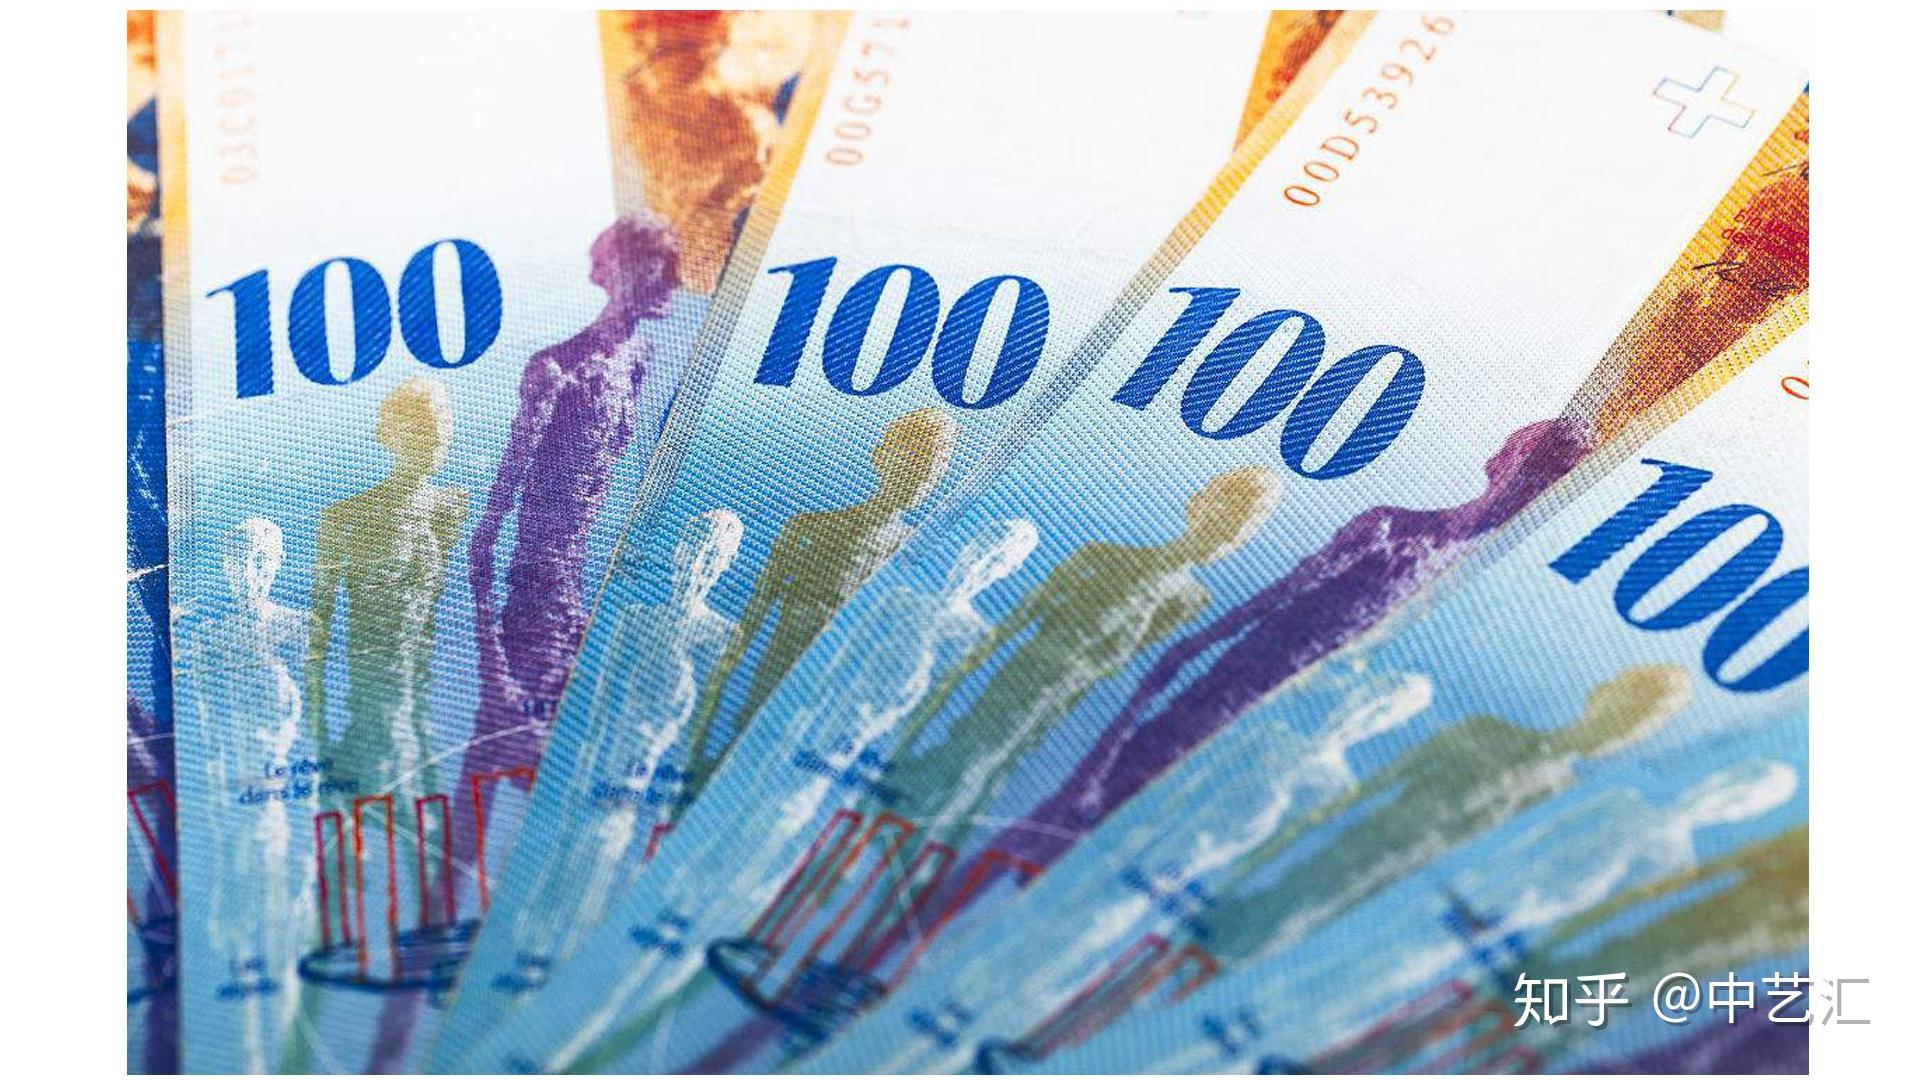 瑞士纸币组 库存图片. 图片 包括有 丰富的, 缺乏, 投资, 市场, 替换, 商业, 产权, 财政, 货币 - 217631603